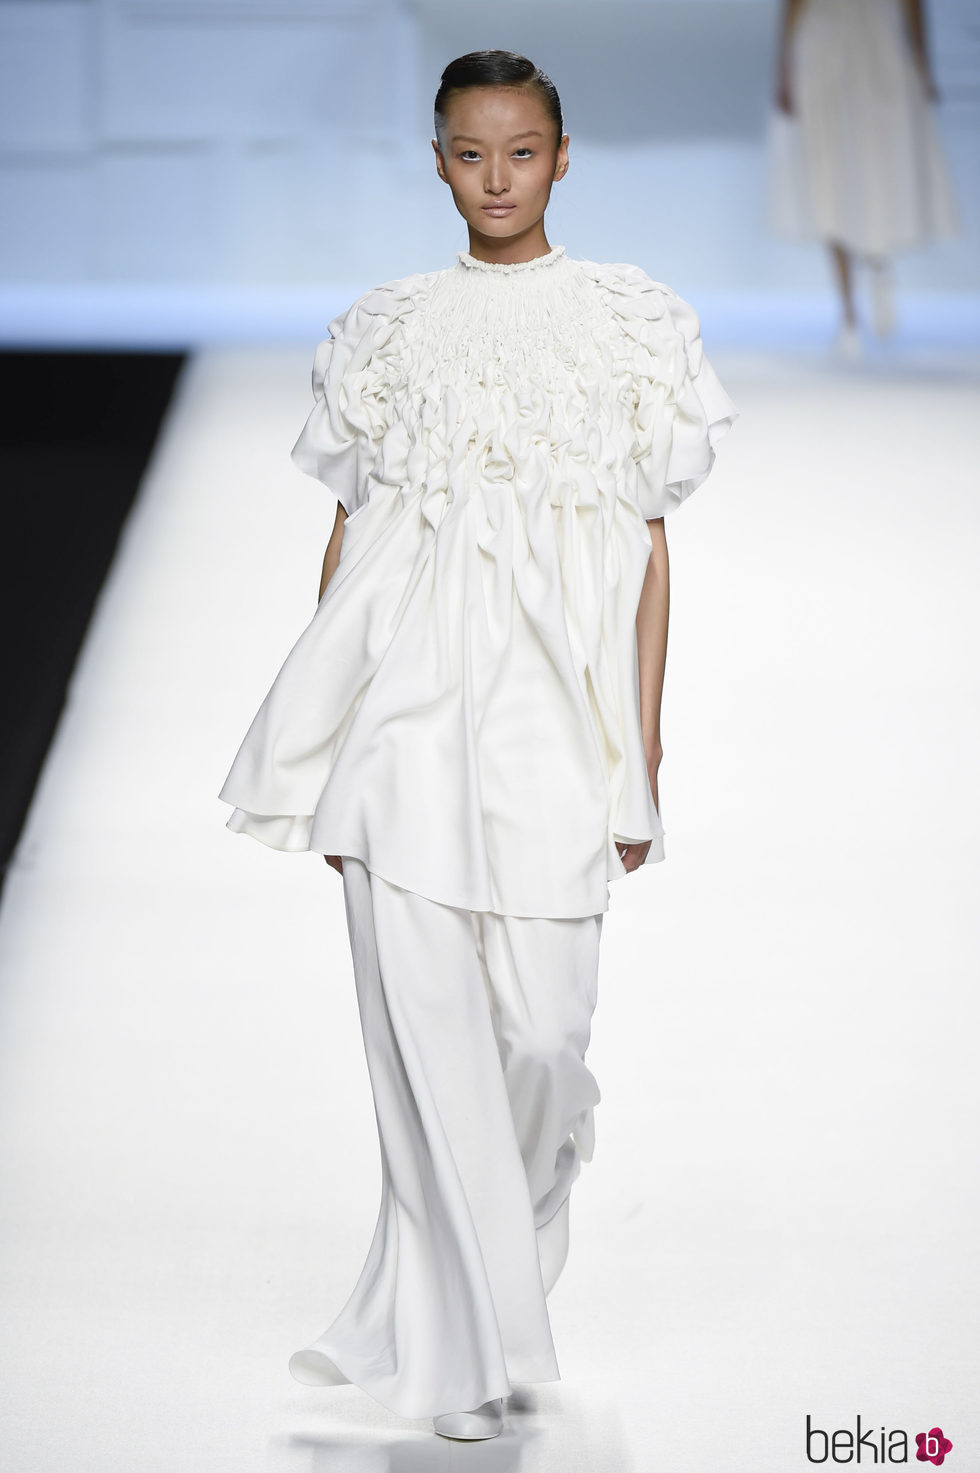 Blusa larga con pliegues blanca de Devota & Lomba primavera/verano 2018 en Madrid Fashion Week